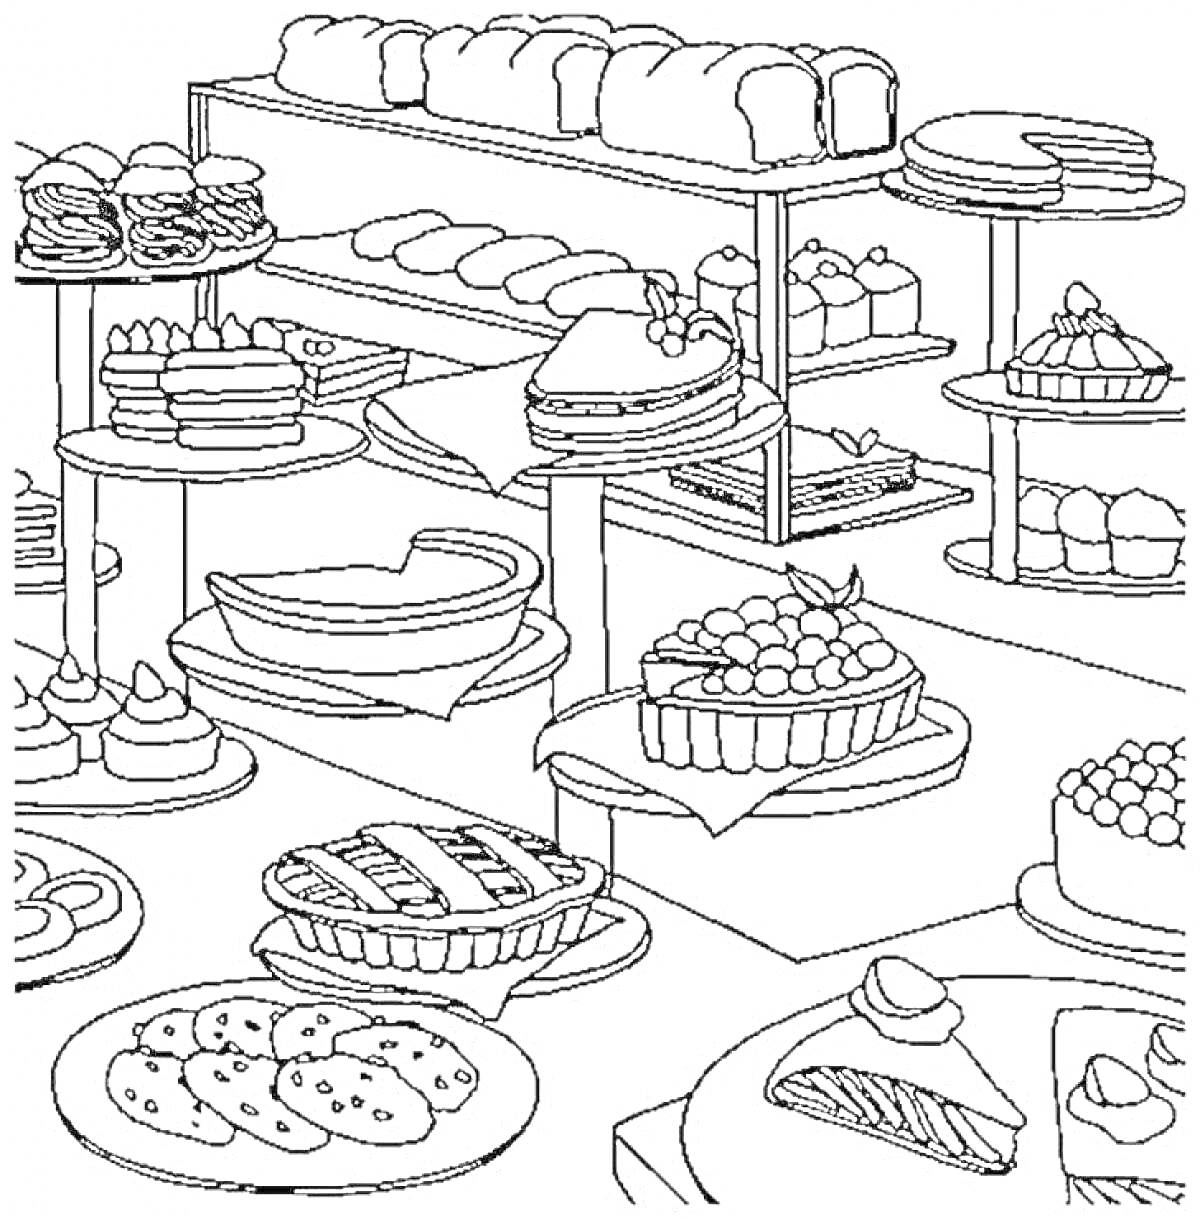 Раскраска Витрина кондитерской с разнообразными сладостями, включая печенье, пирожные, торты, пироги и булочки